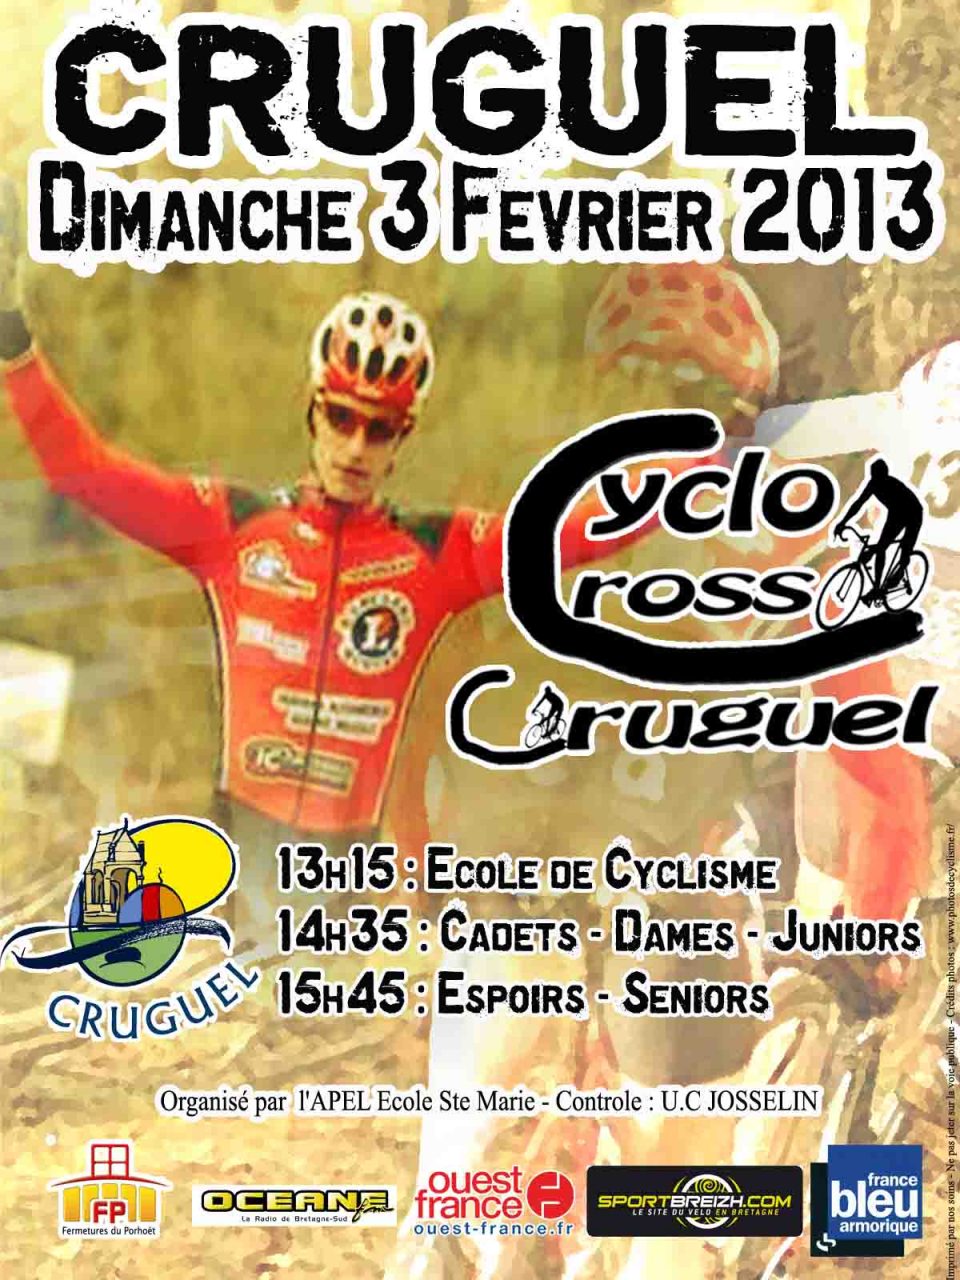 Le cyclo-cross de Cruguel  l'affiche